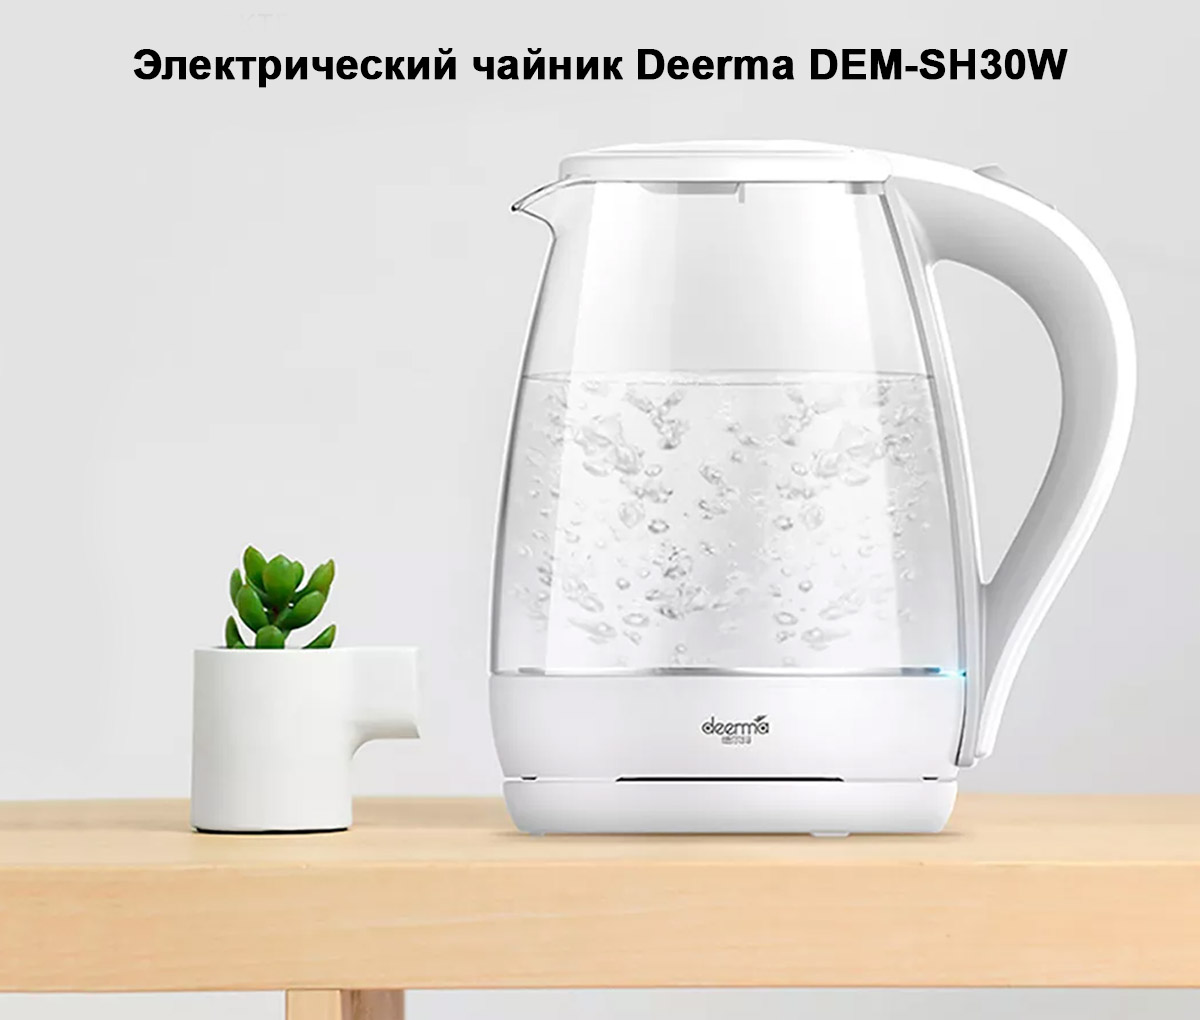 Электрический чайник Deerma DEM-SH30W